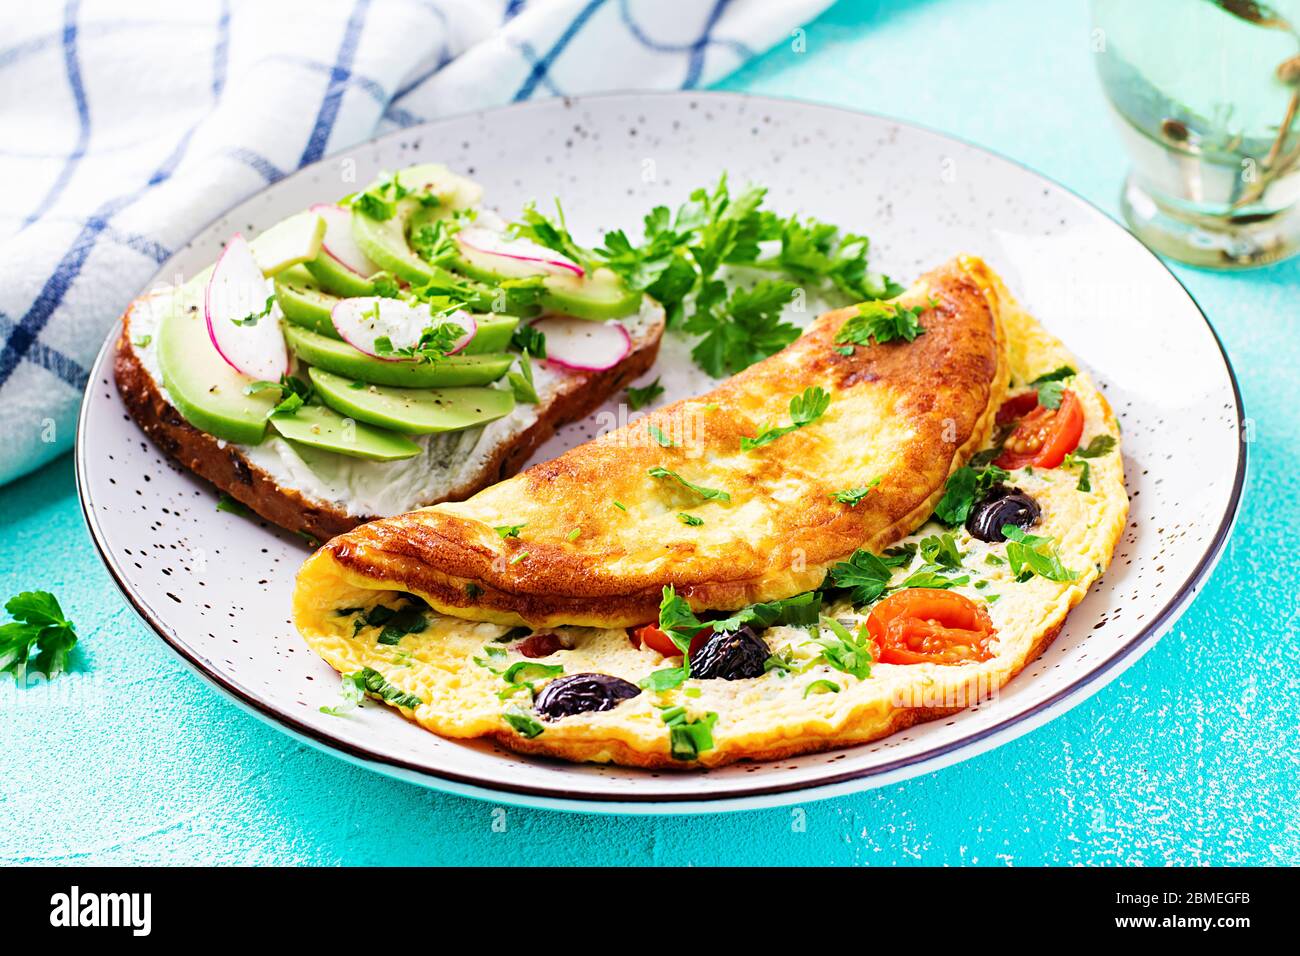 Petit déjeuner. Omelette aux tomates, olives noires et sandwich à l'avocat sur une assiette blanche. Frittata - omelette italienne. Banque D'Images